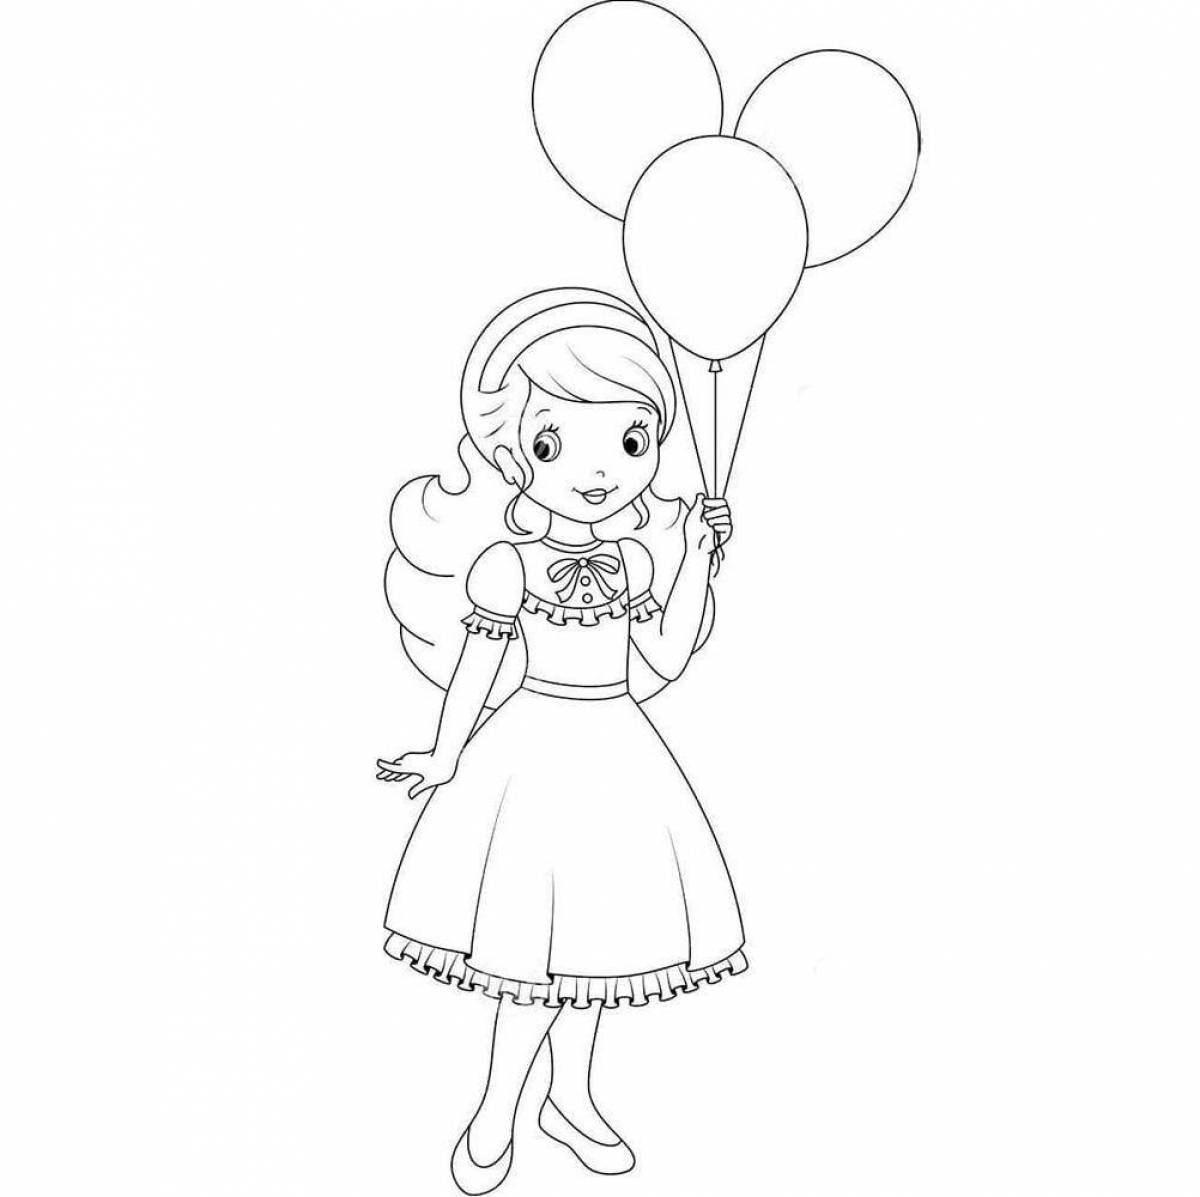 Balloon girl #4